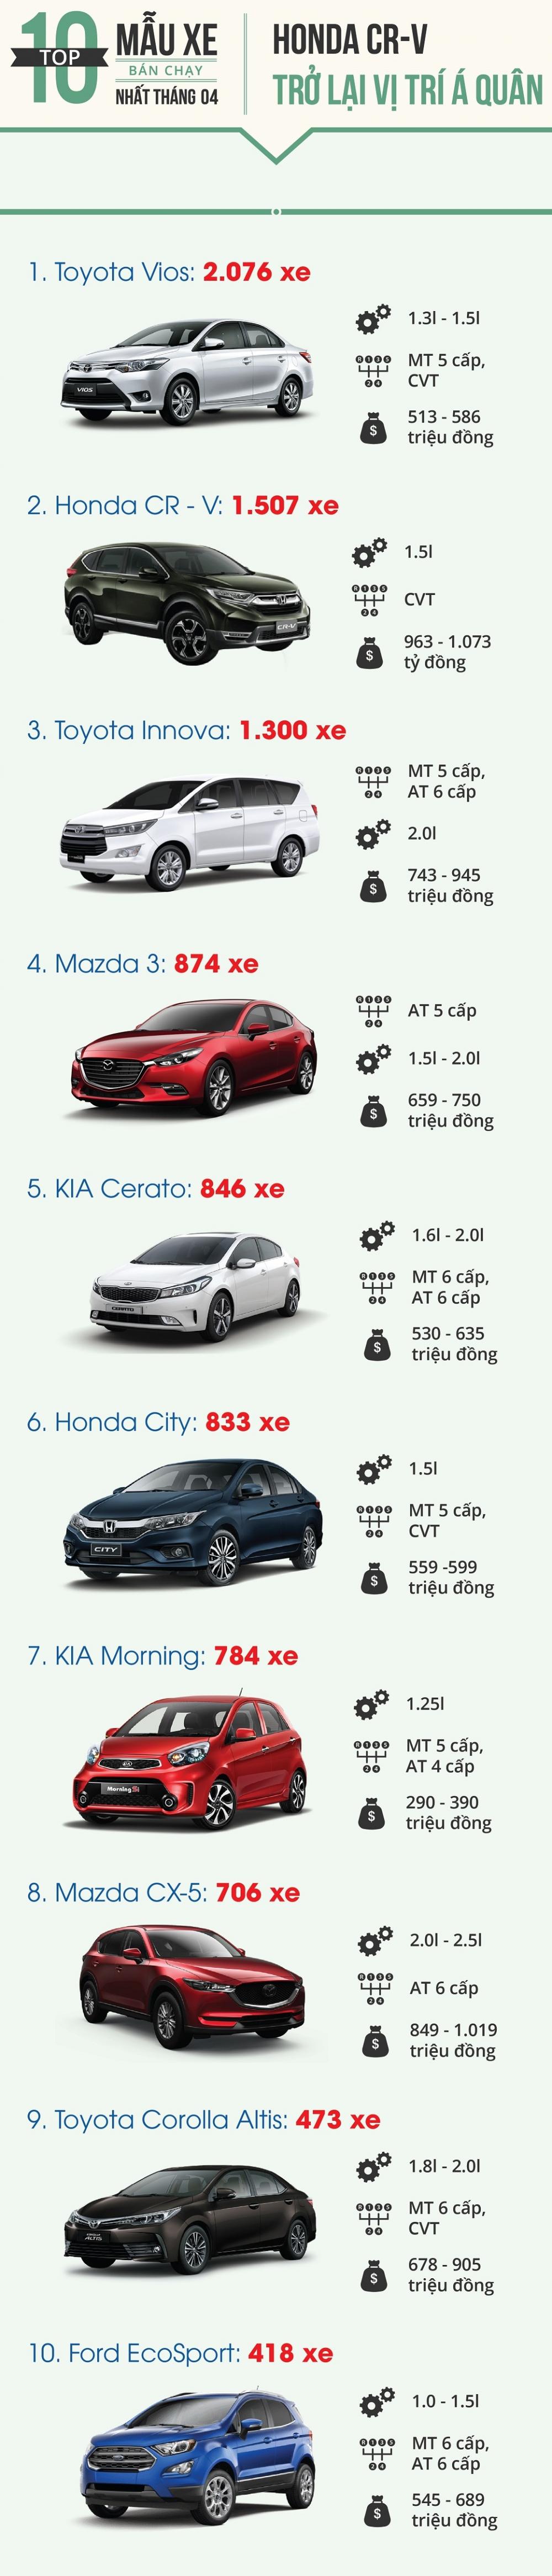 10 mẫu ô tô bán chạy nhất thị trường Việt tháng 4/2018.